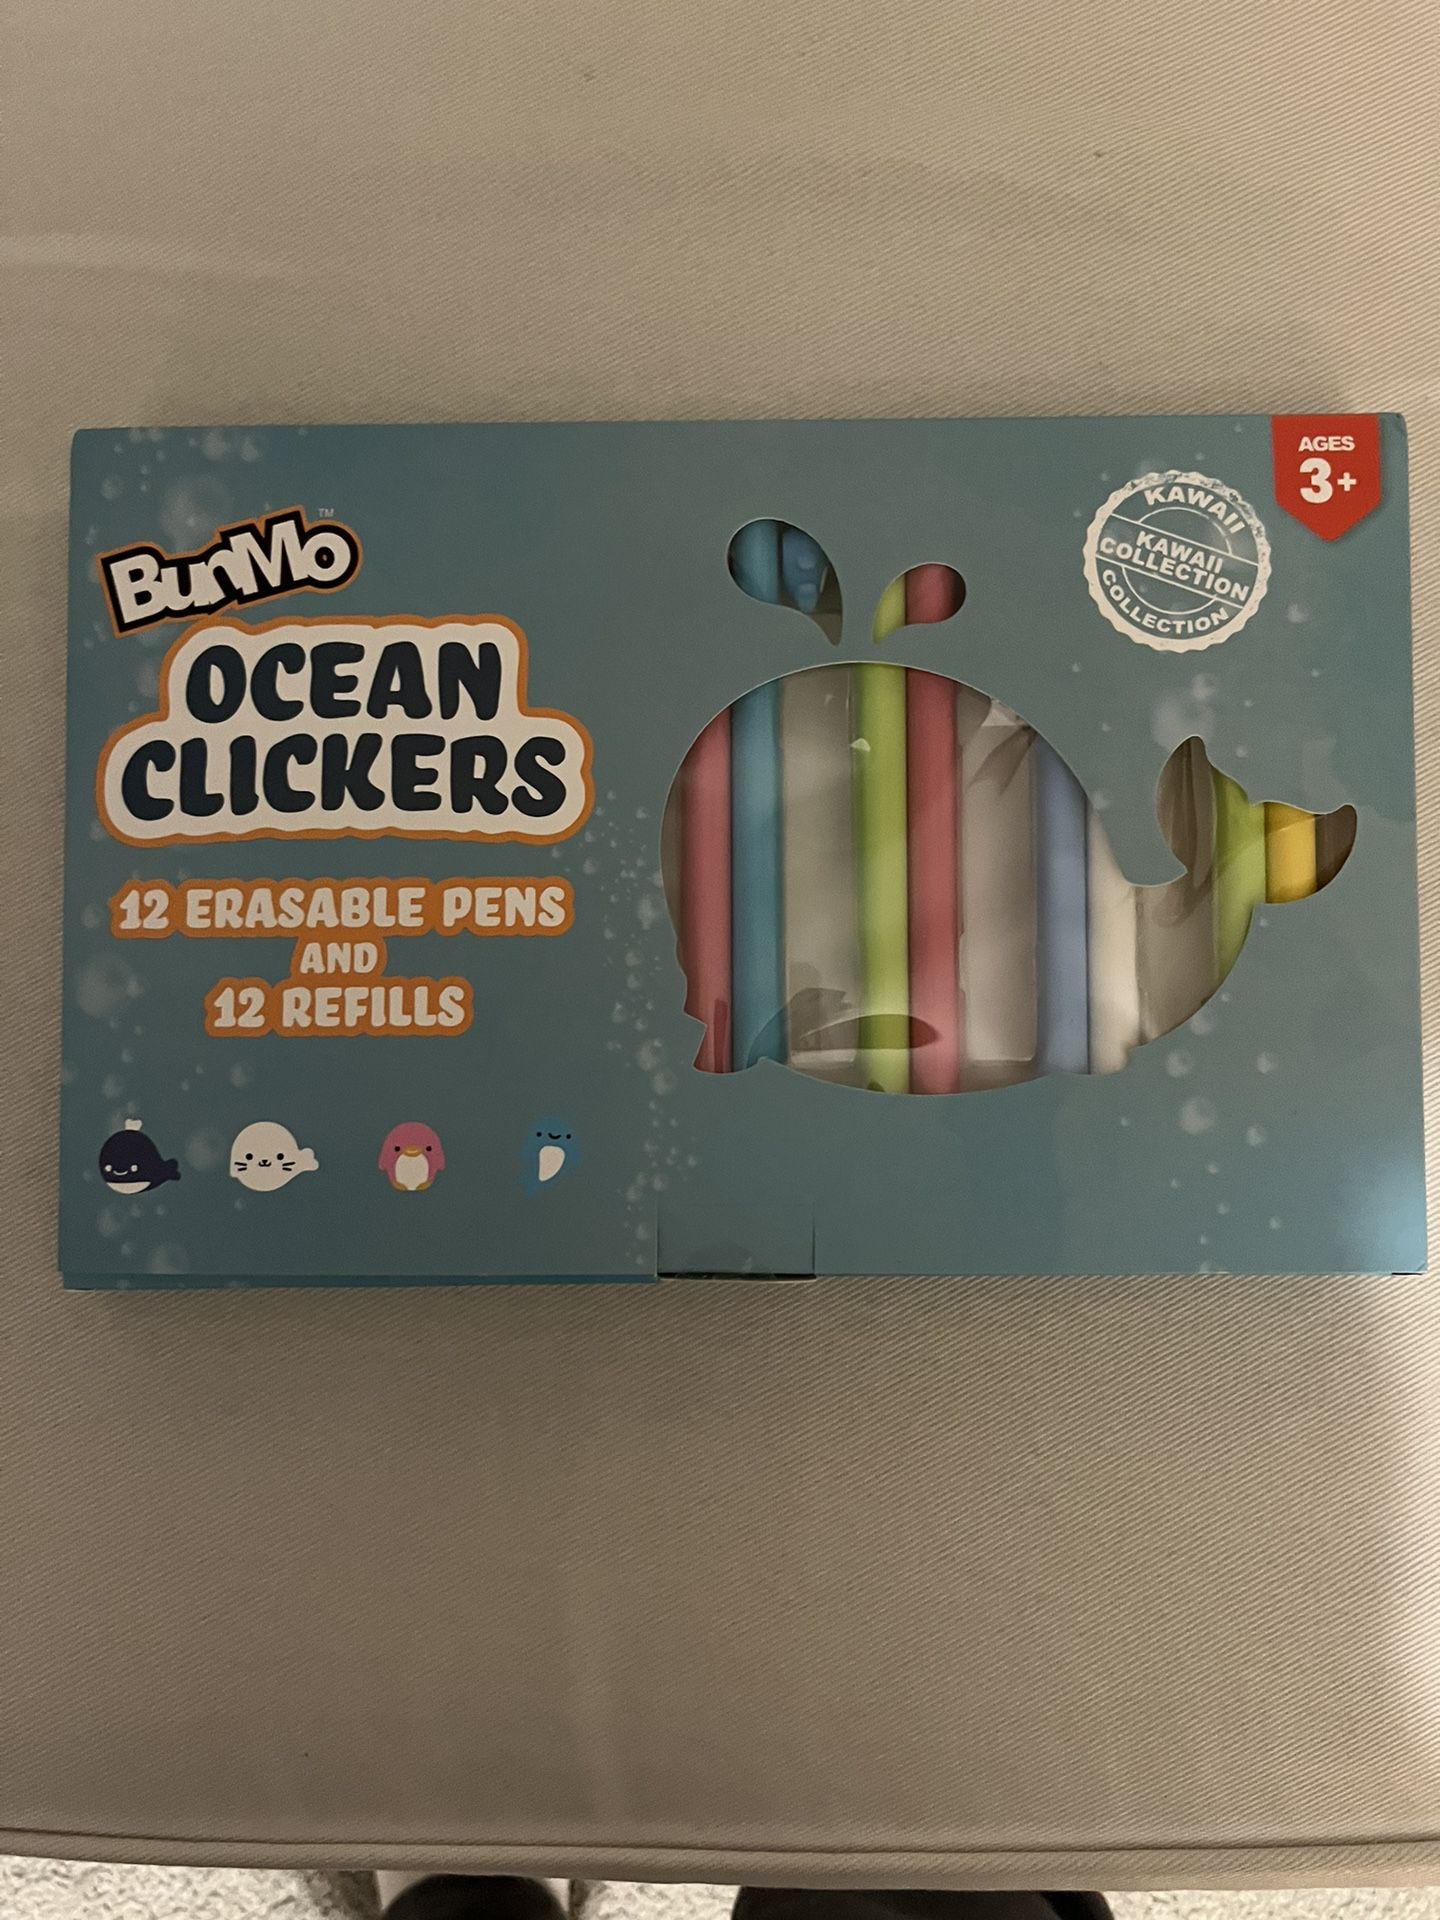 BunMo Ocean Clickers Erasable Pens